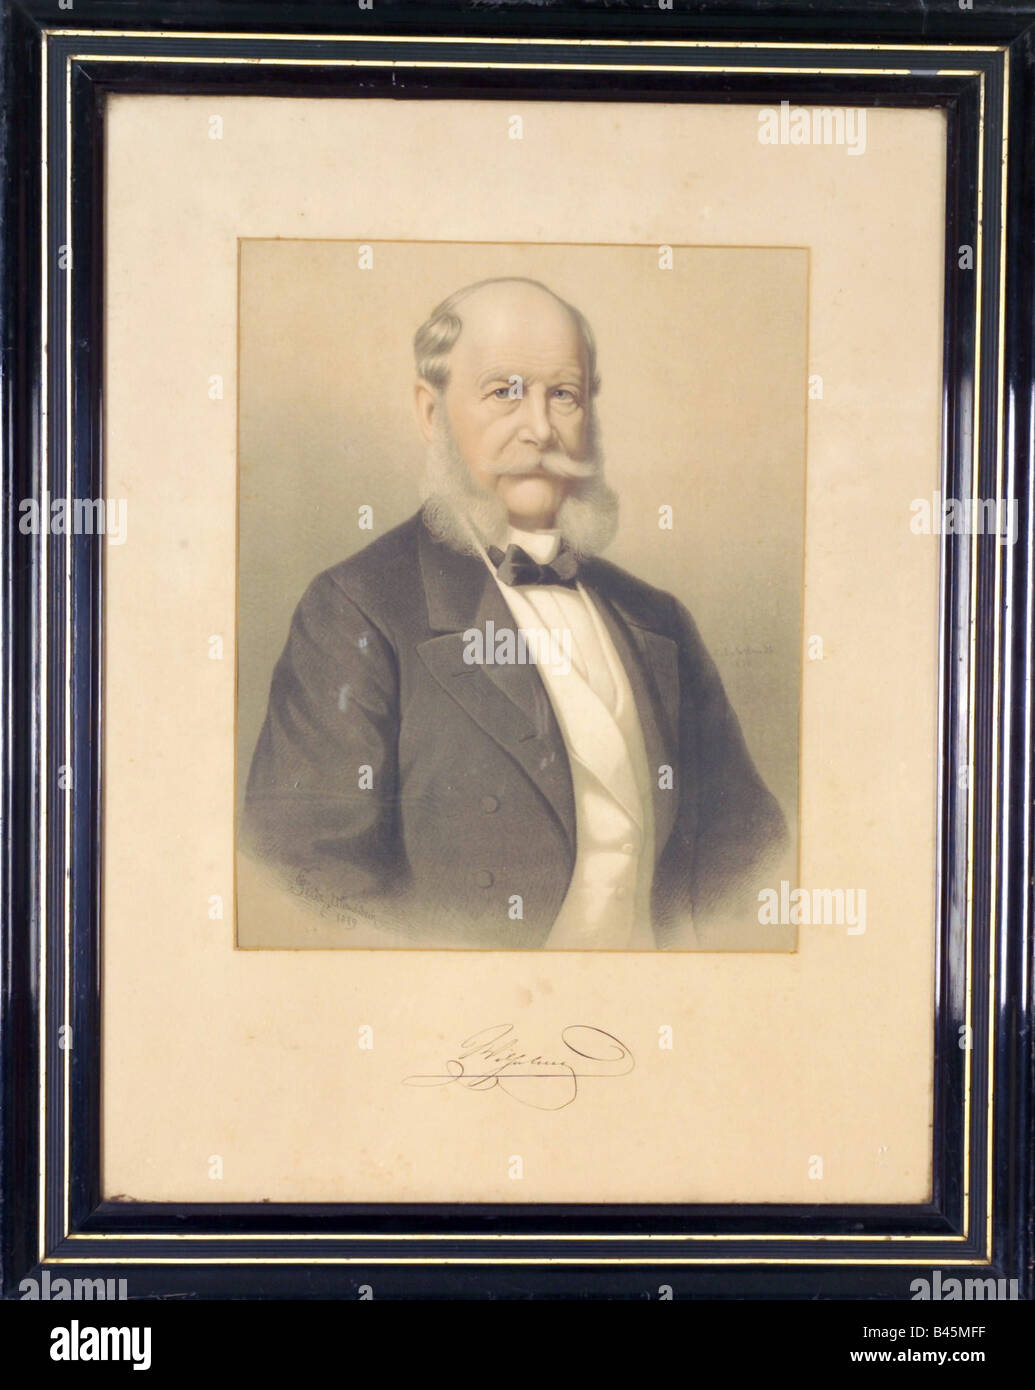 William I., 22.3.1797 - 9.3.1888, German Emperor 18.1.1871 - 9.3.1888, , Stock Photo